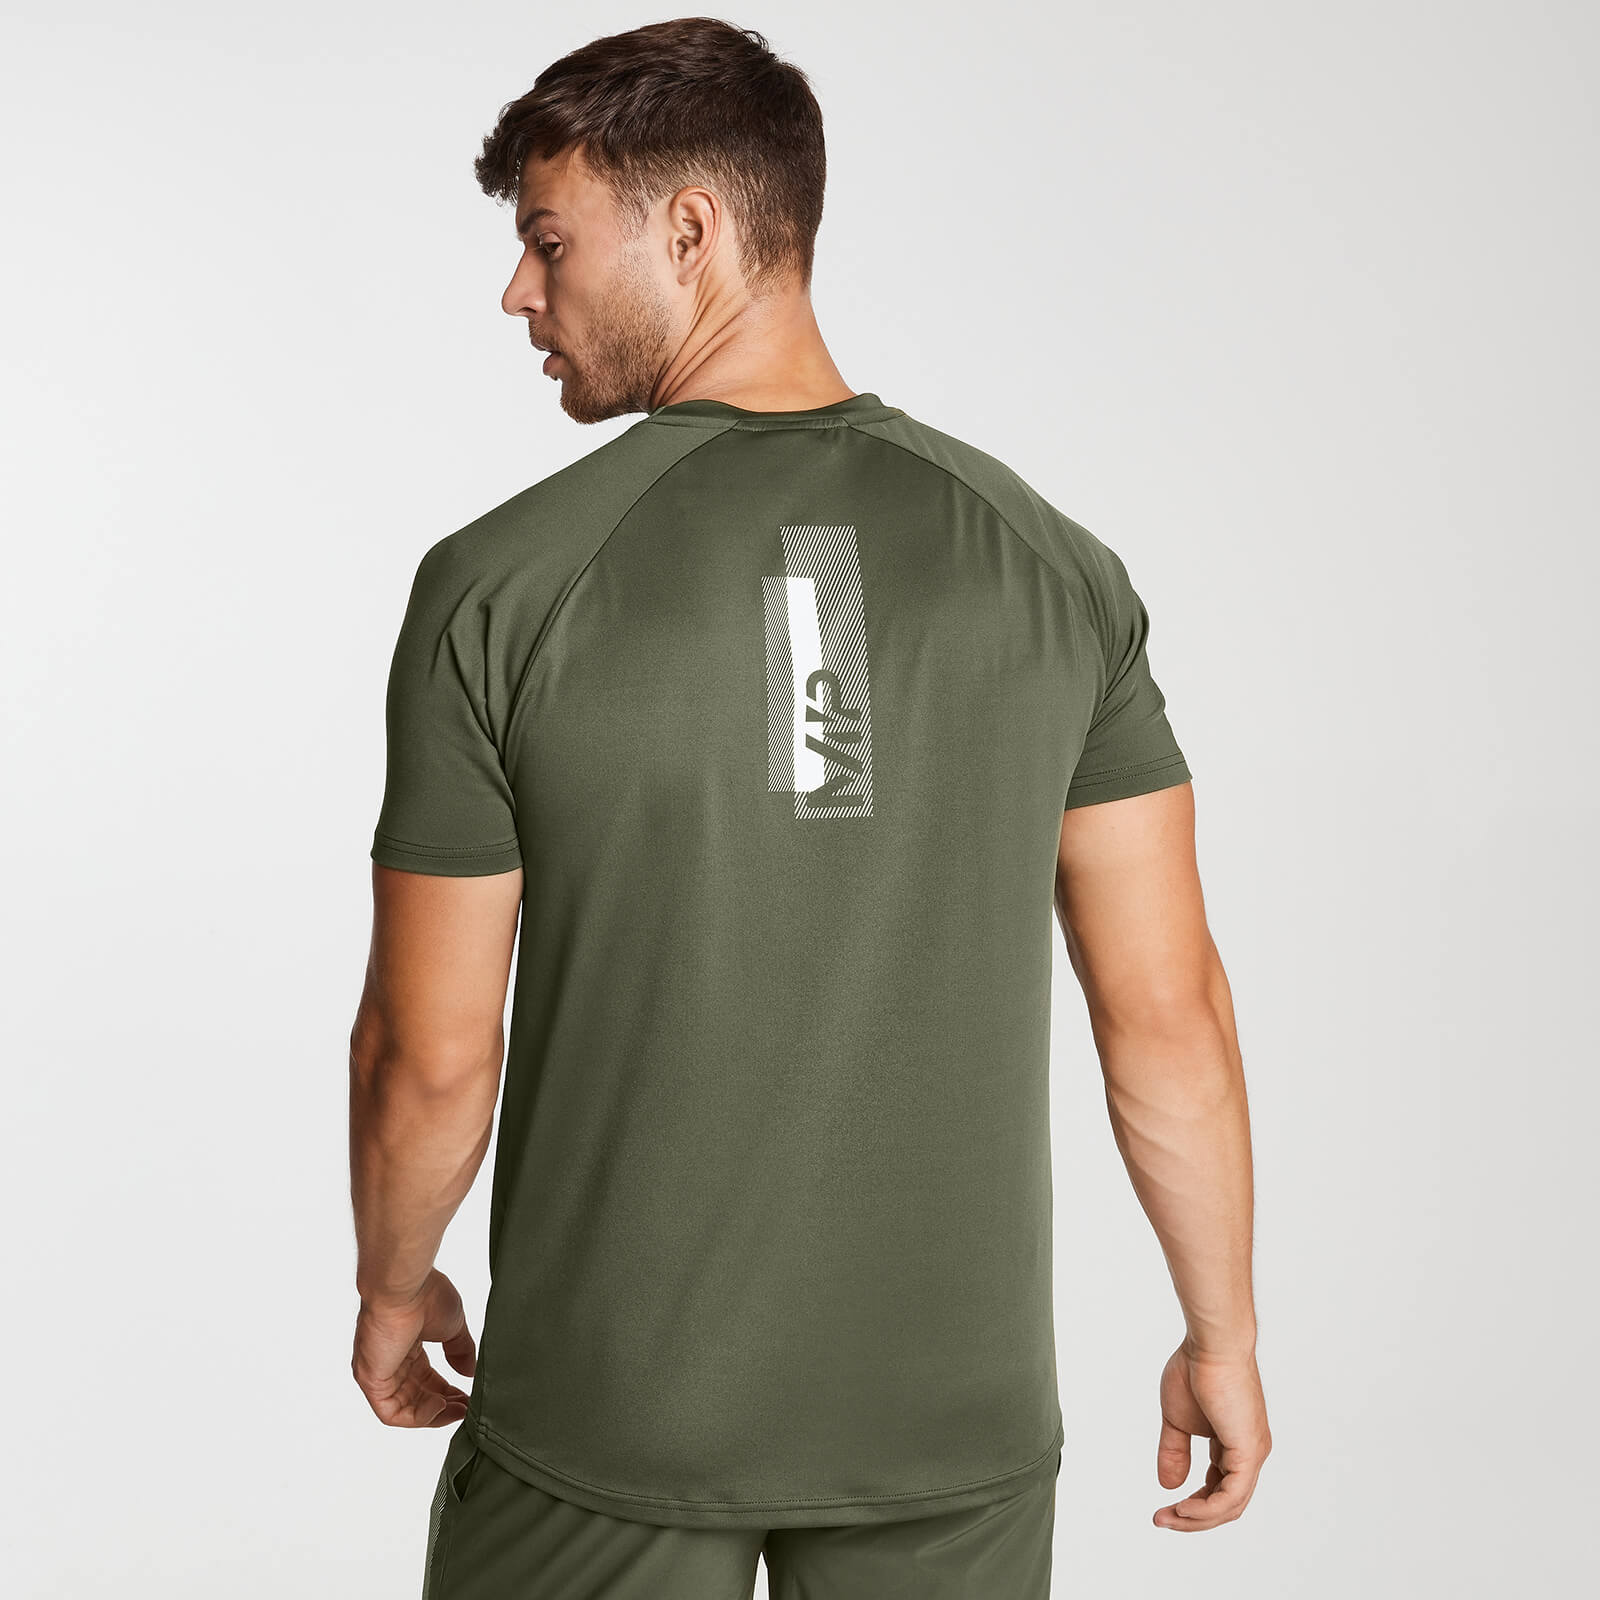 T-Shirt D'entraînement Imprimé MP Pour Homme - Vert Armée